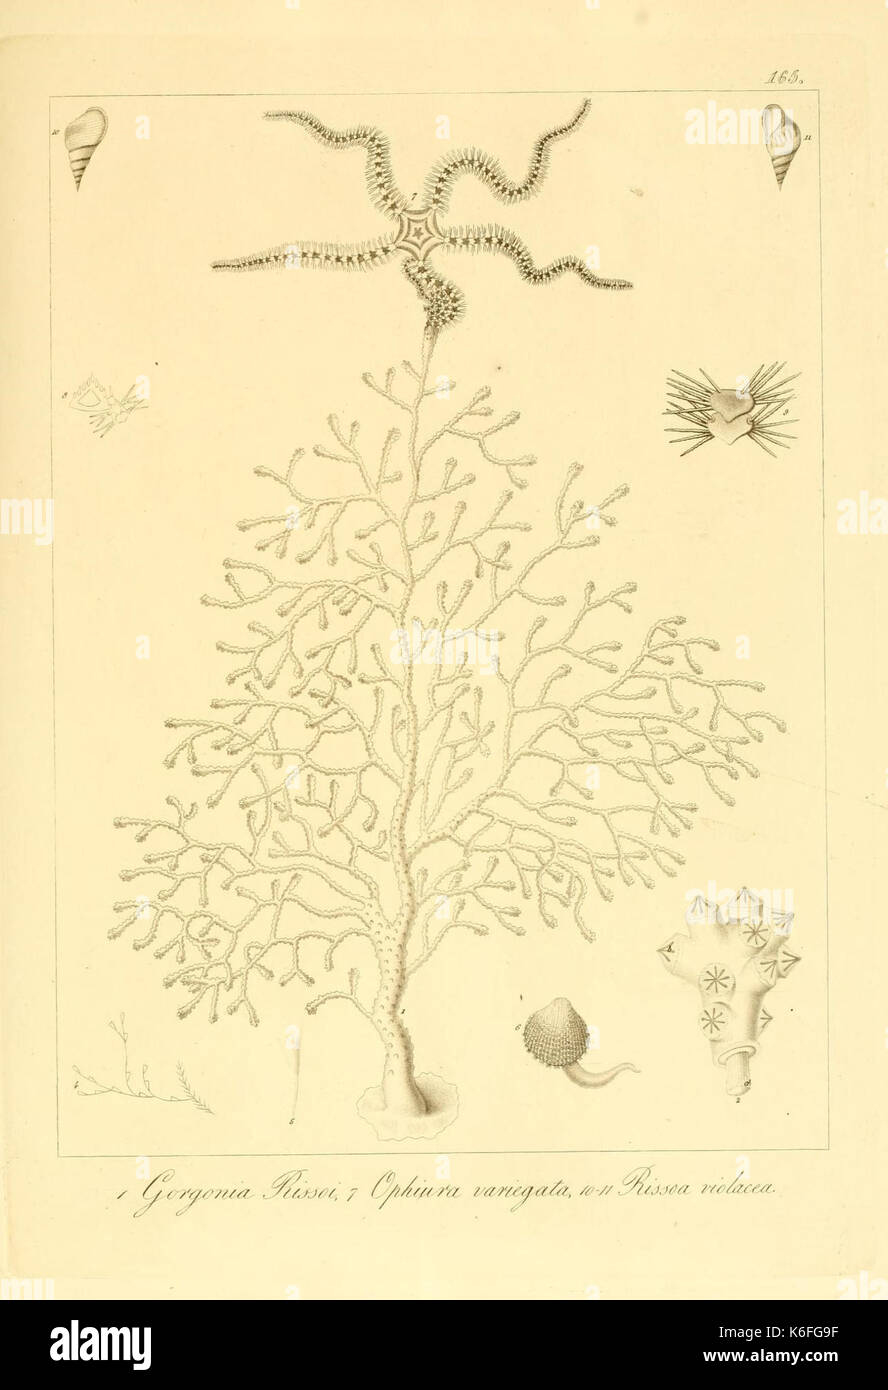 Beschreibung e notomia degli animali invertebrati della Sicilia citeriore (Platte 165) (9351831298) Stockfoto